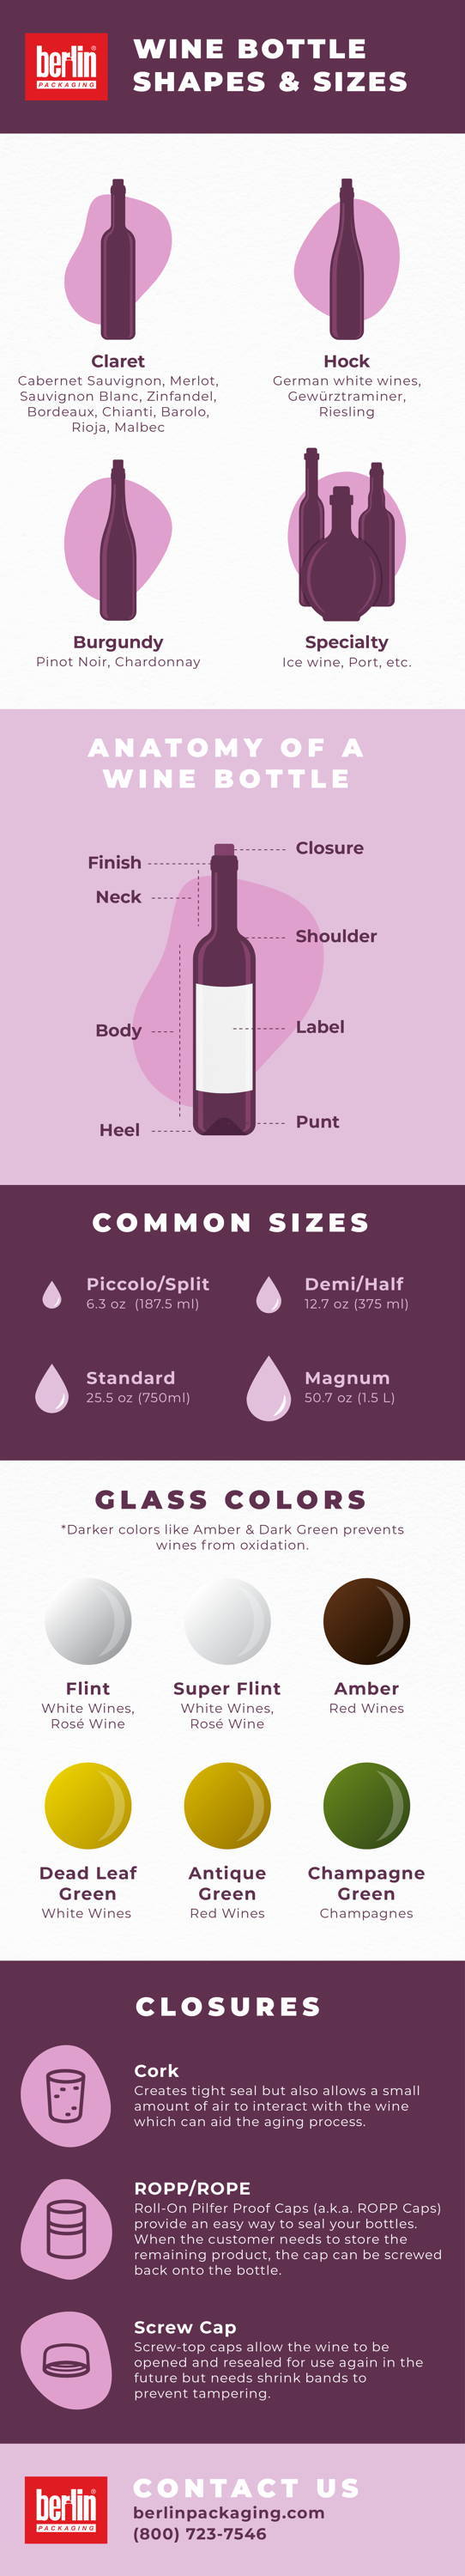 Wine Bottle Guide